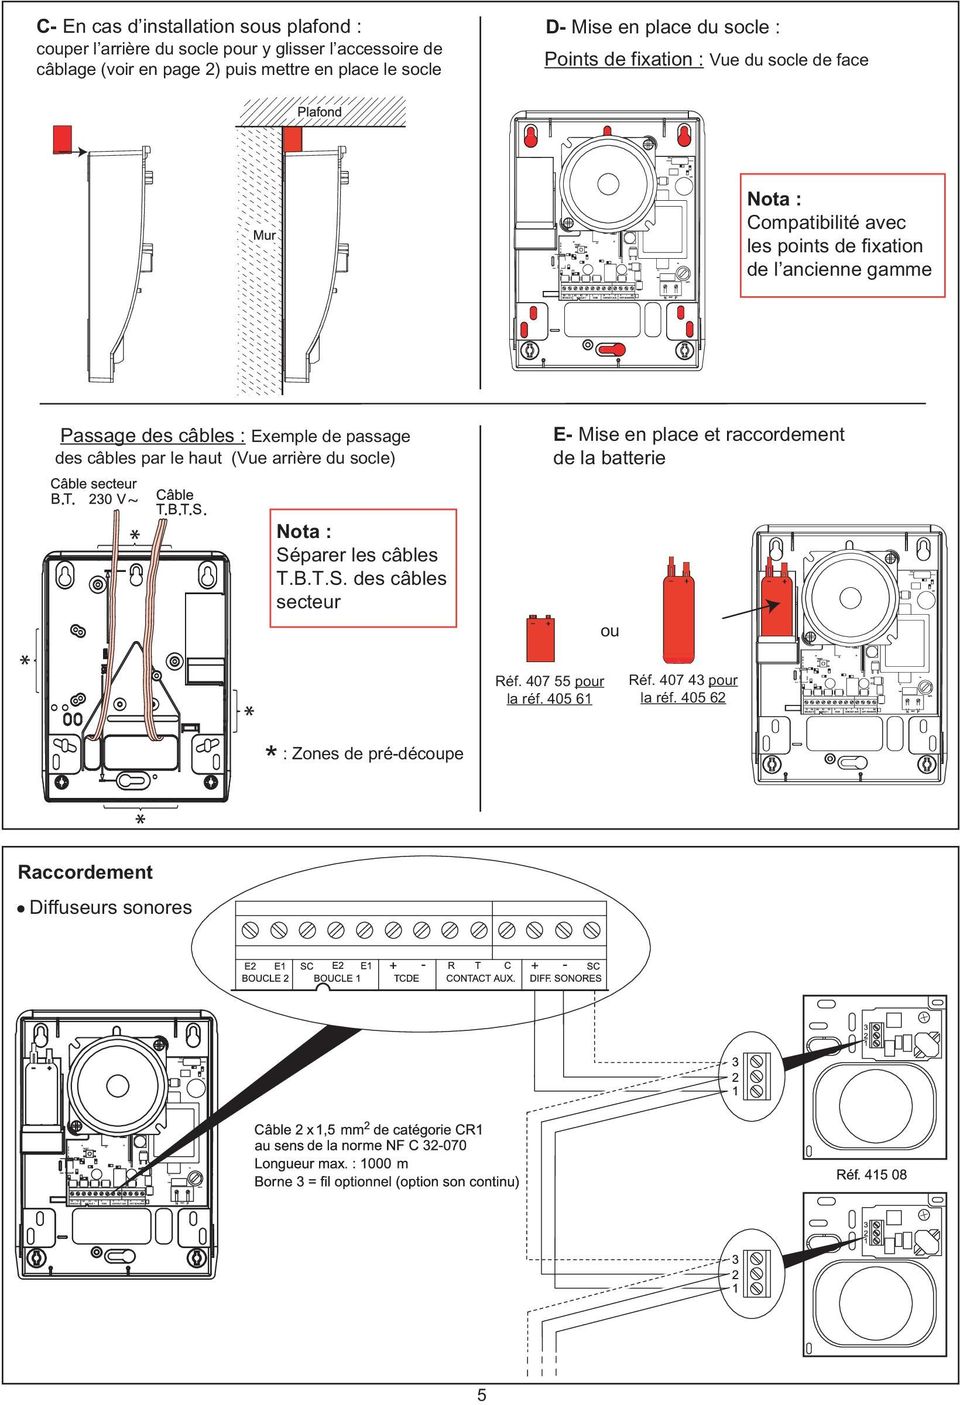 câbles : Exemple de passage des câbles par le haut (Vue arrière du socle) E- Mise en place et raccordement de la batterie.. ~.